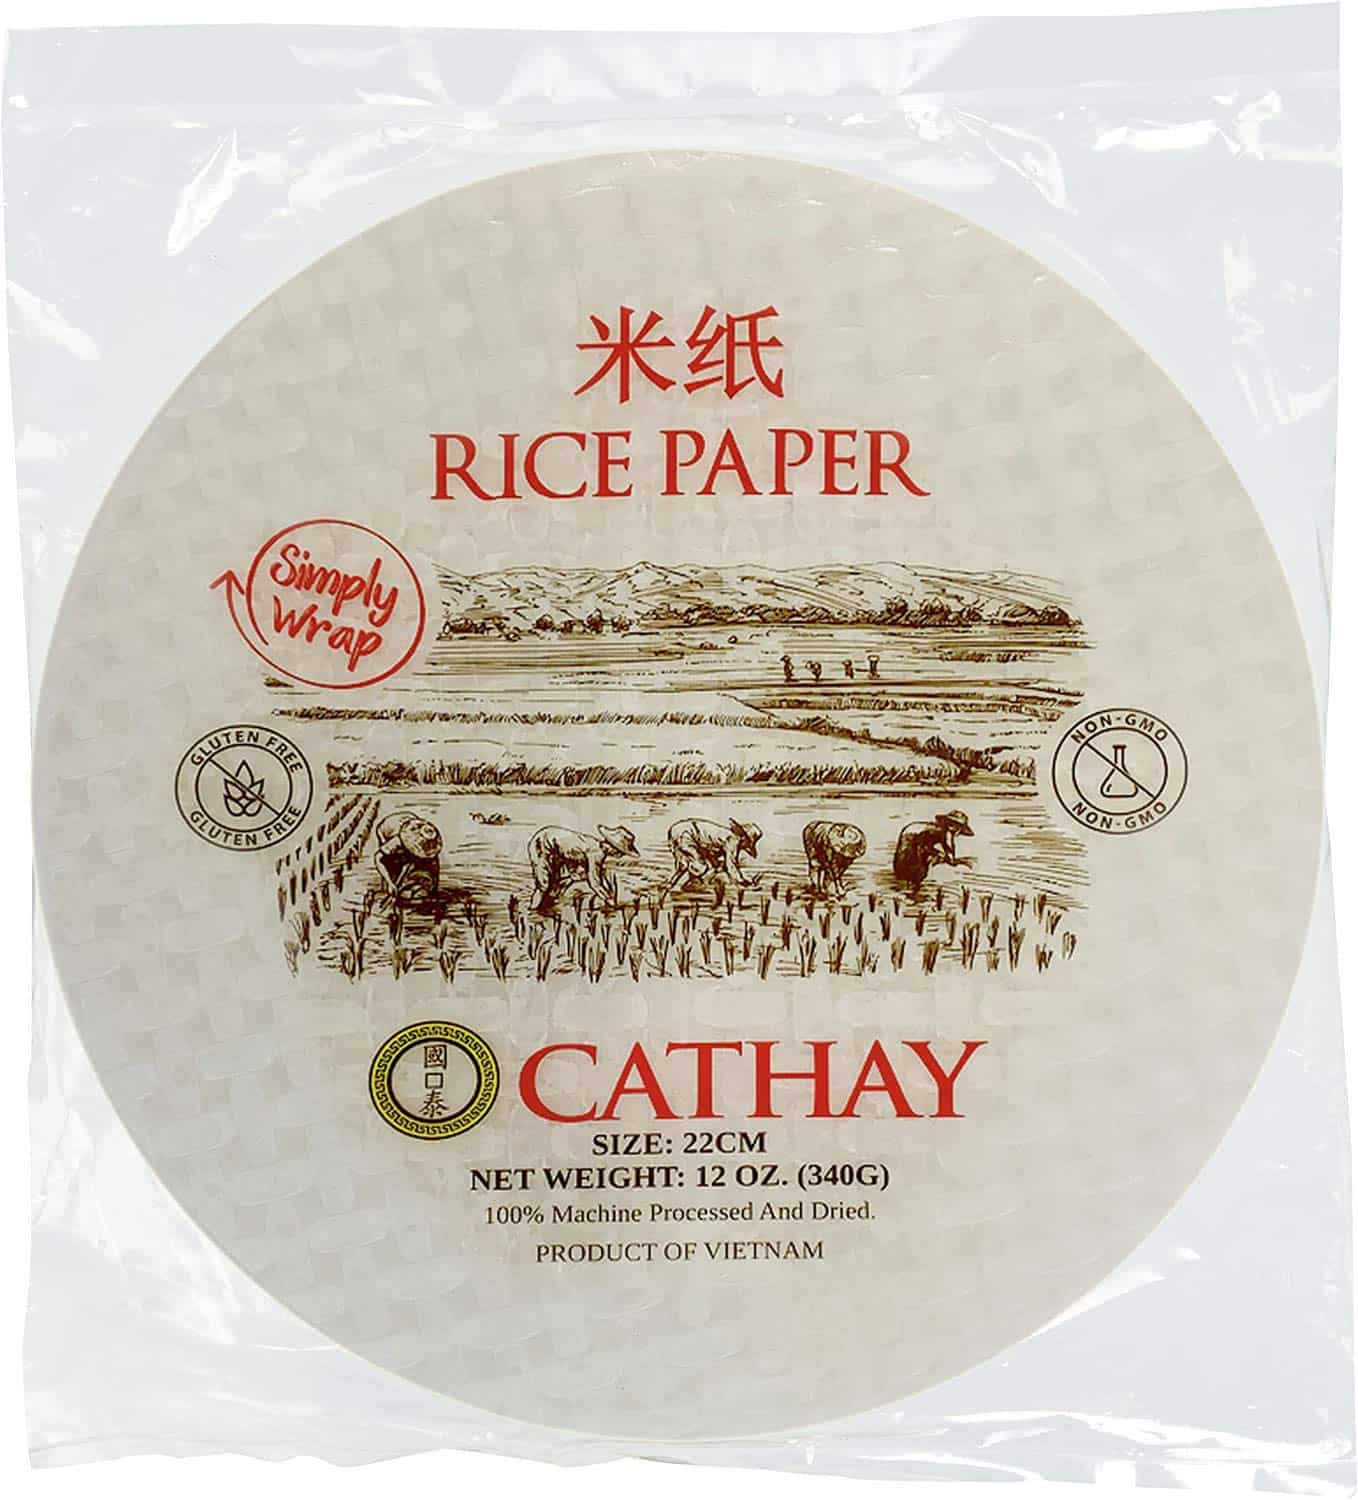 米紙包裝作為蛋捲包裝的替代品